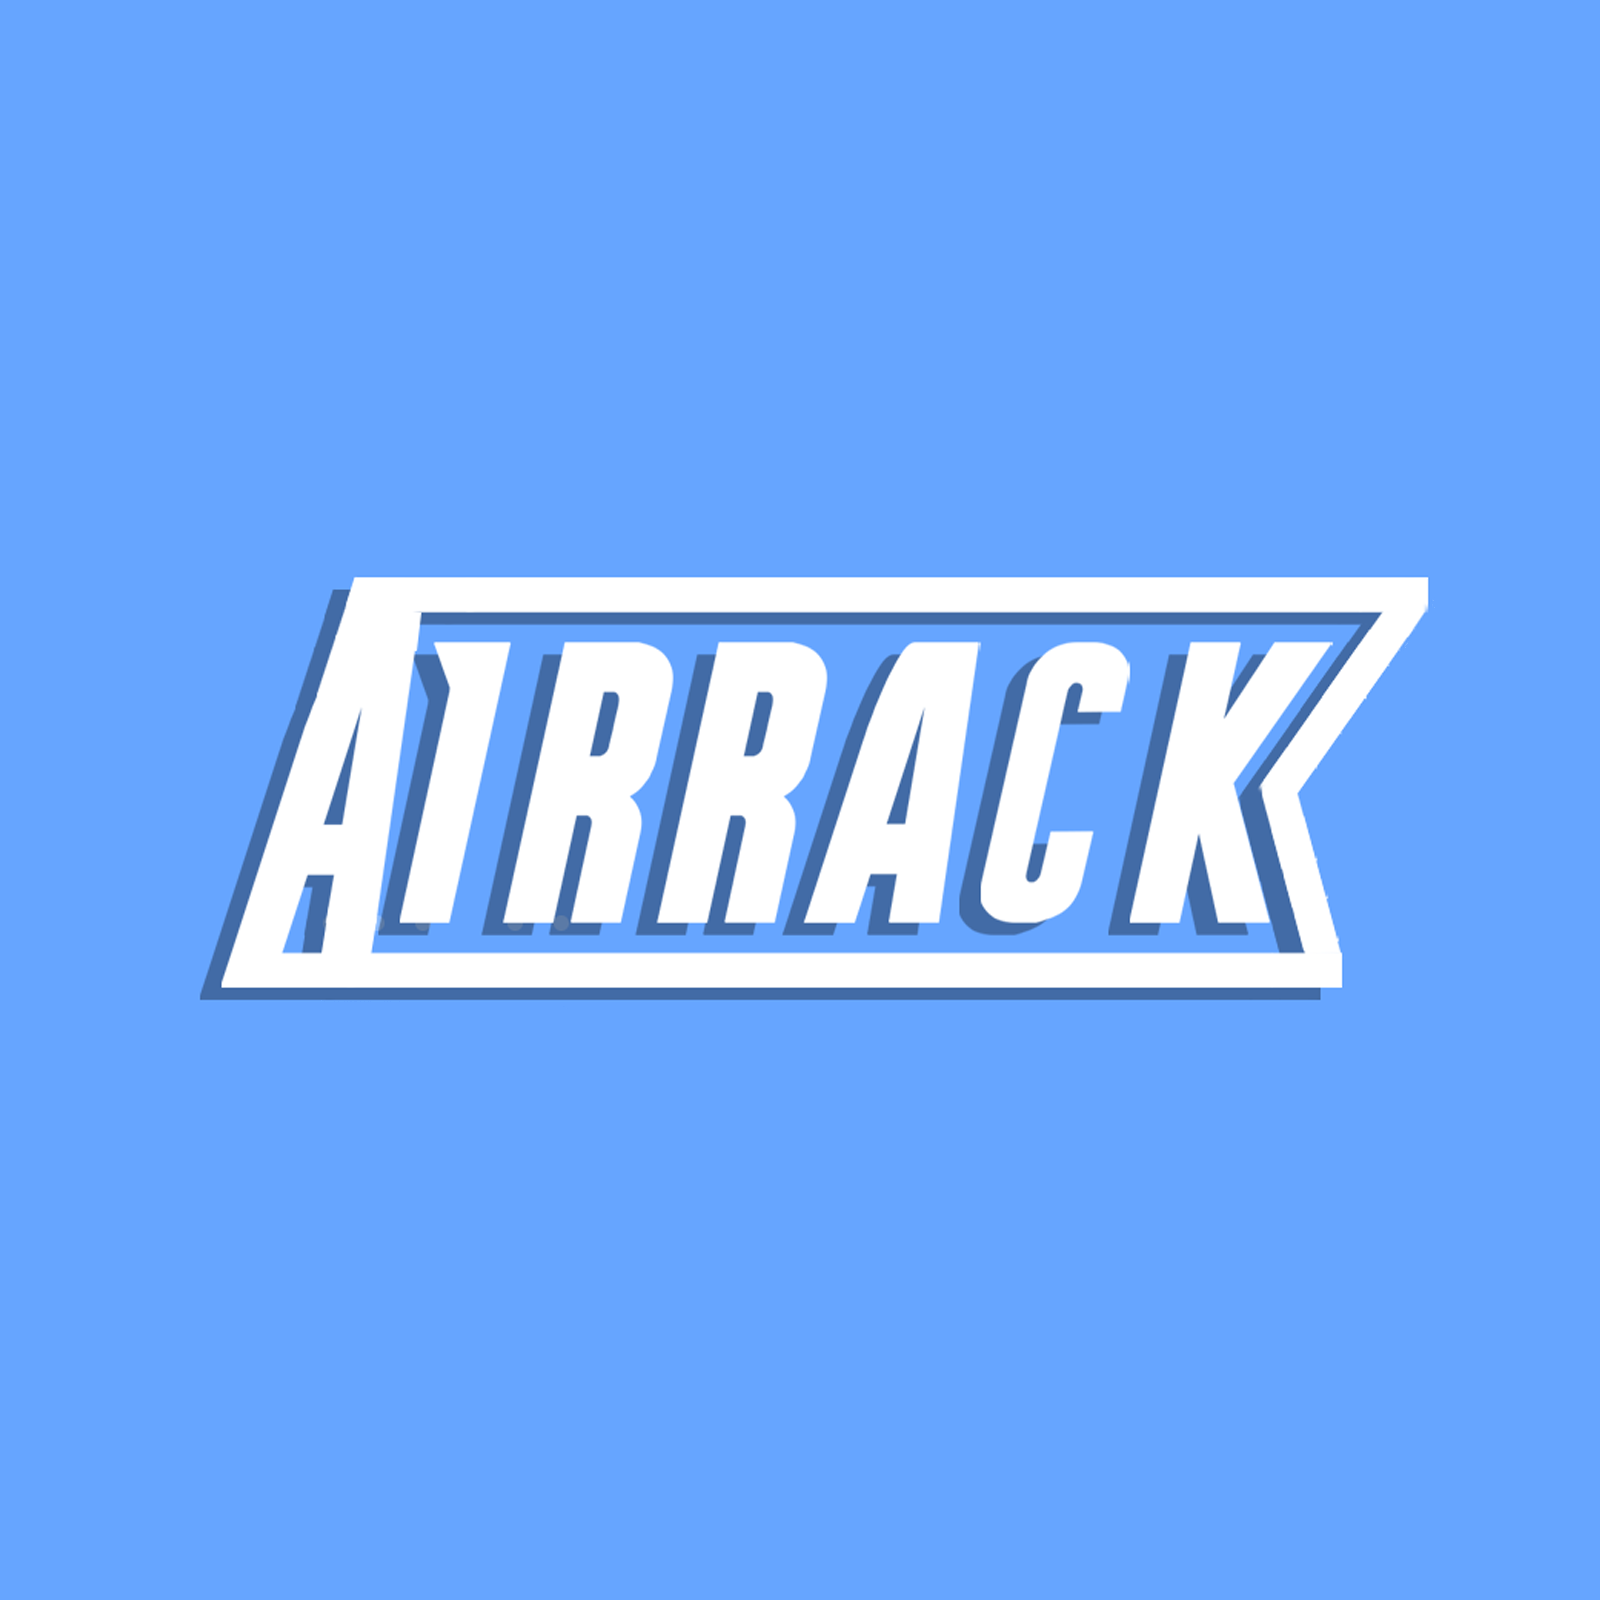 Airrack